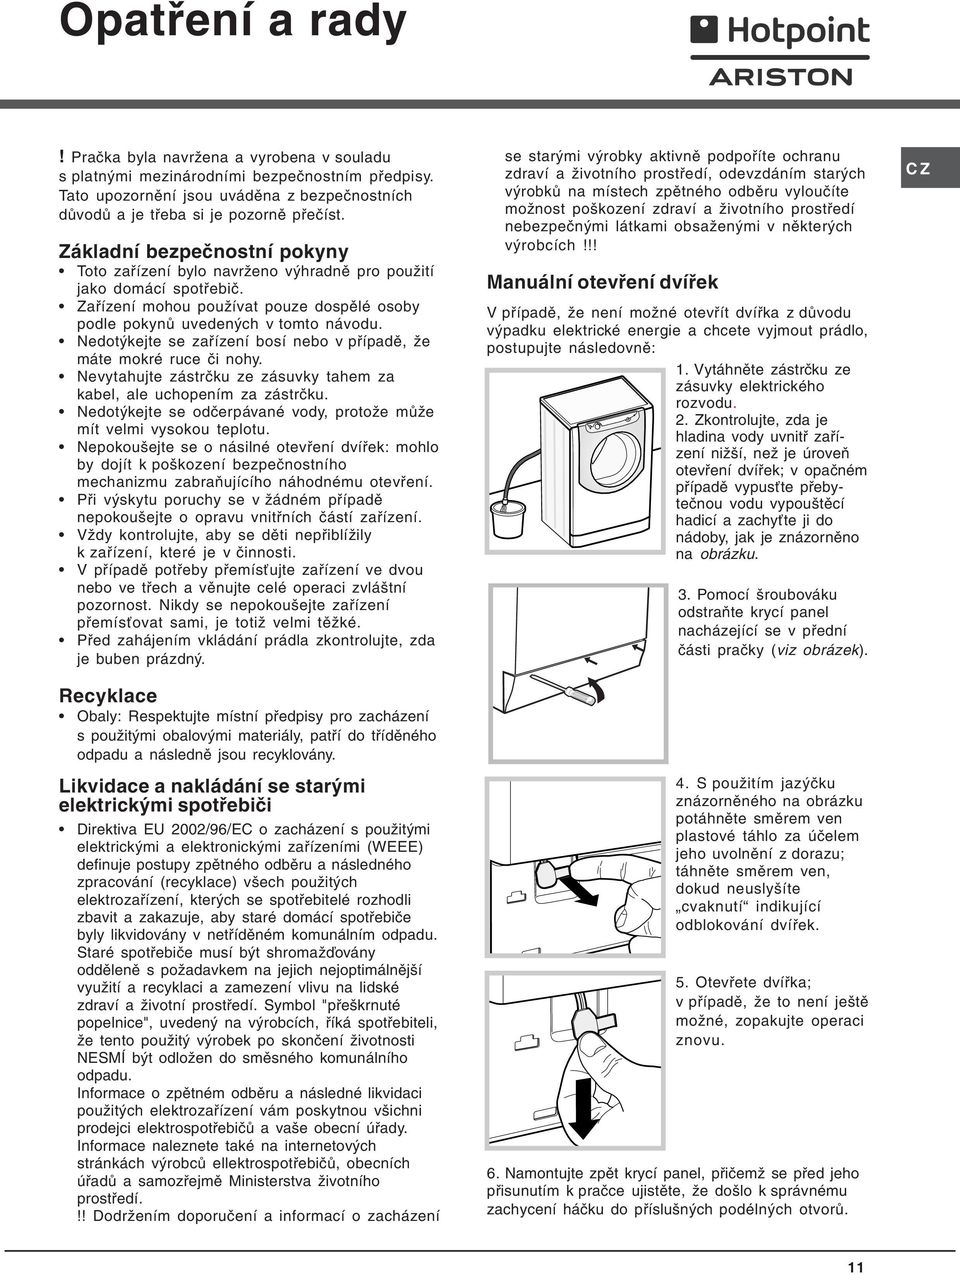 Nedotýkejte se zařízení bosí nebo v případě, že máte mokré ruce či nohy. Nevytahujte zástrčku ze zásuvky tahem za kabel, ale uchopením za zástrčku.